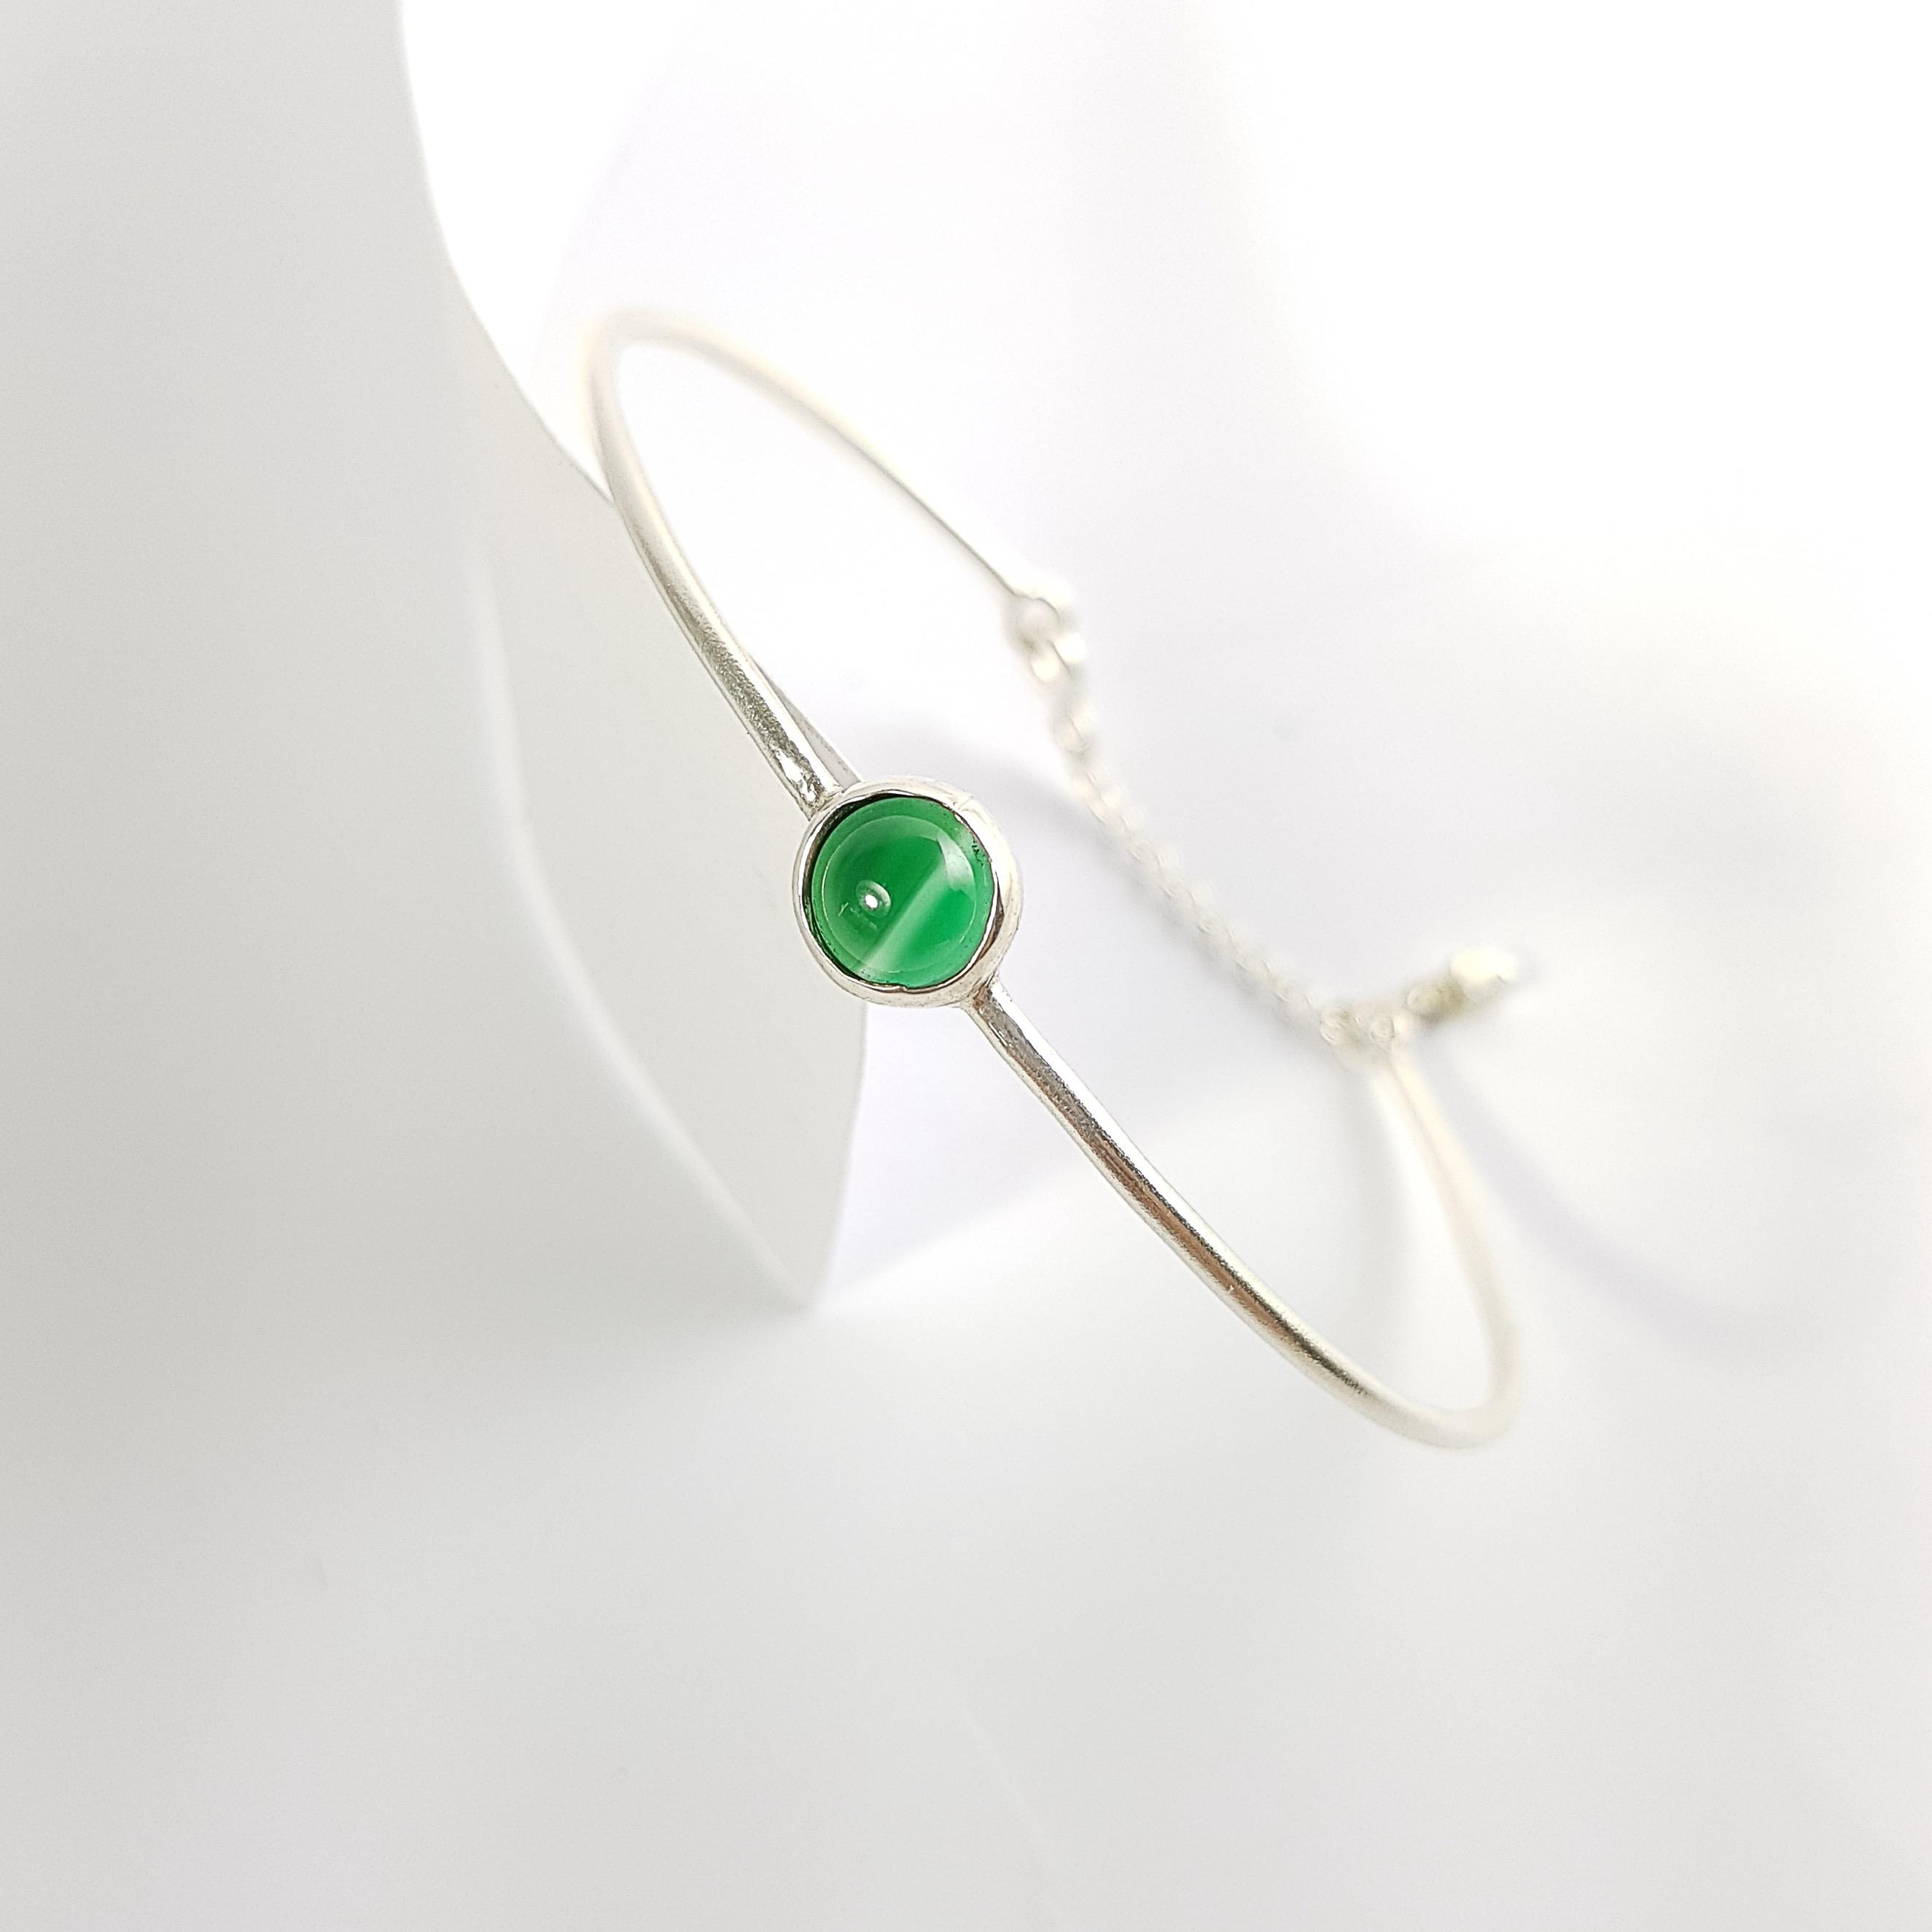 原點-勇氣綠瑪瑙999純銀手環 5月誕生幸運石 / Green Agate